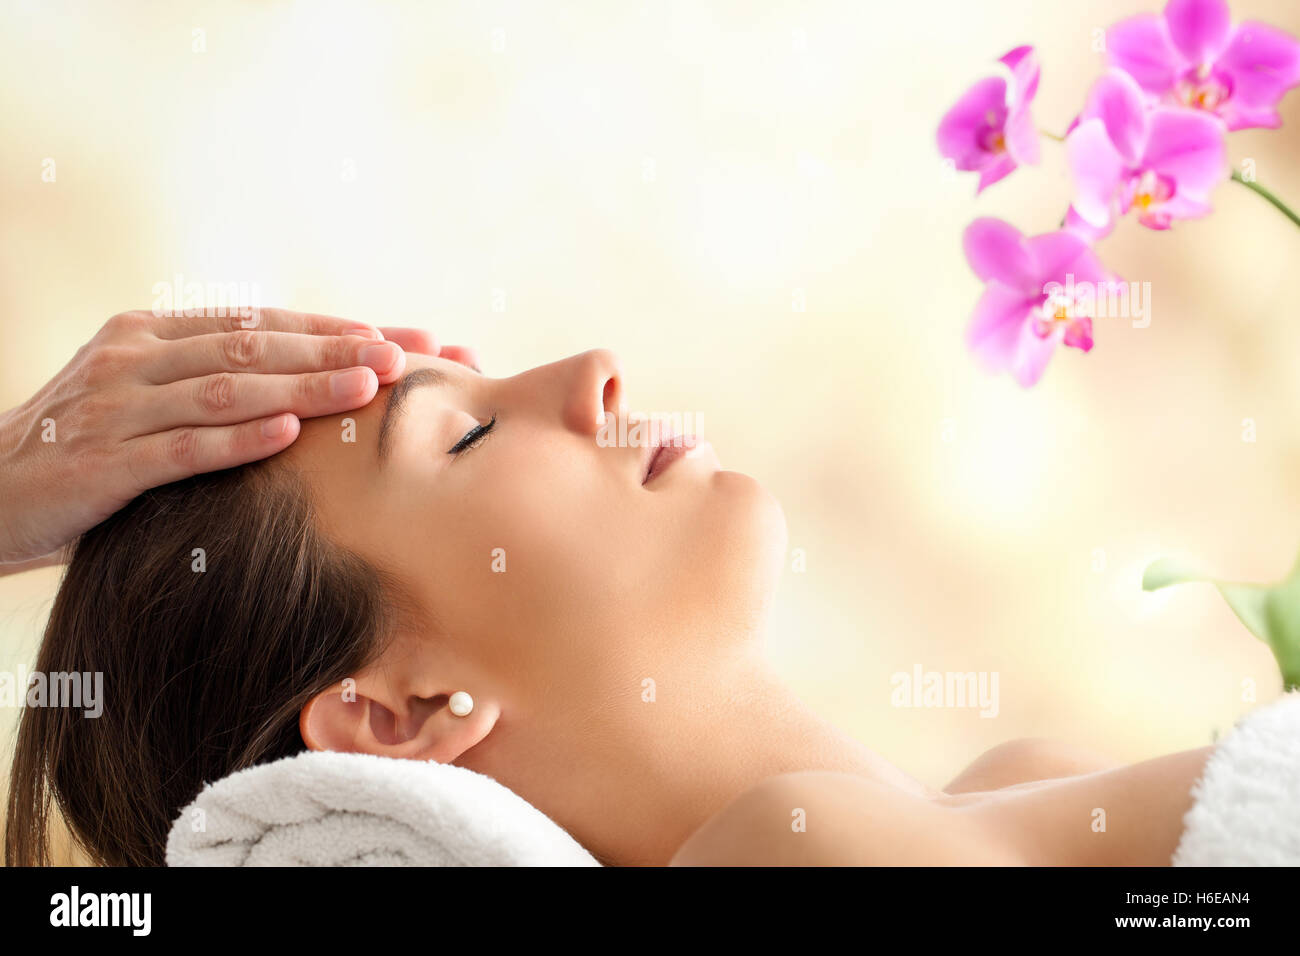 Porträt der jungen weiblichen Gesichts-Massage im Spa hautnah. Therapeuten massieren Frauenkopf vor hellen bunten Hintergrund. Stockfoto